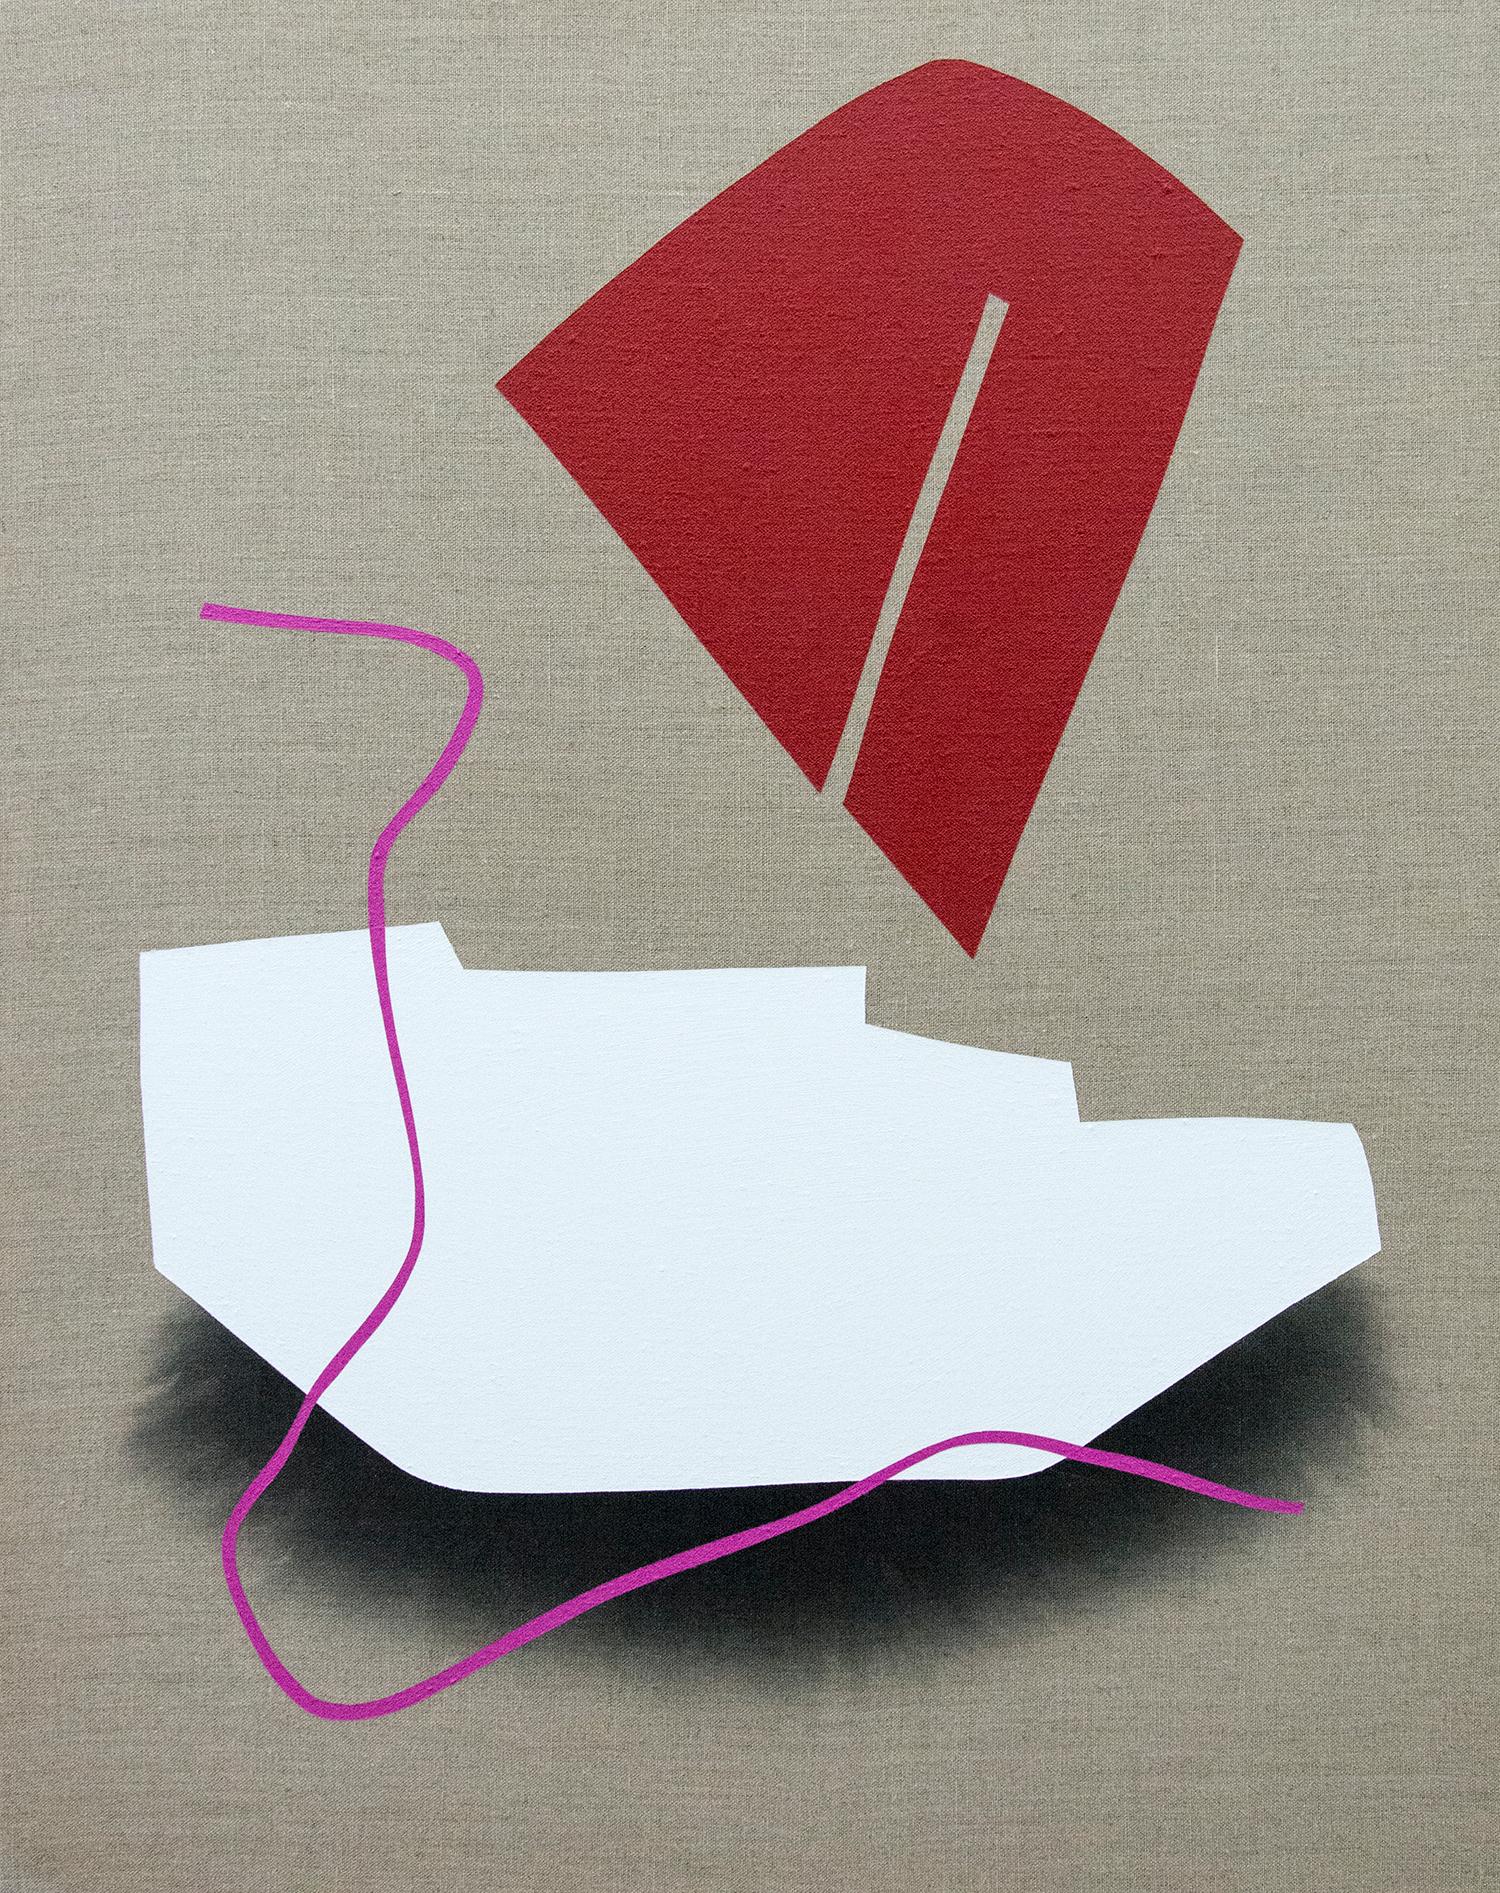 Blocs rouges et blancs - ensemble de quatre peintures ludiques sur lin - Beige Abstract Painting par Aron Hill